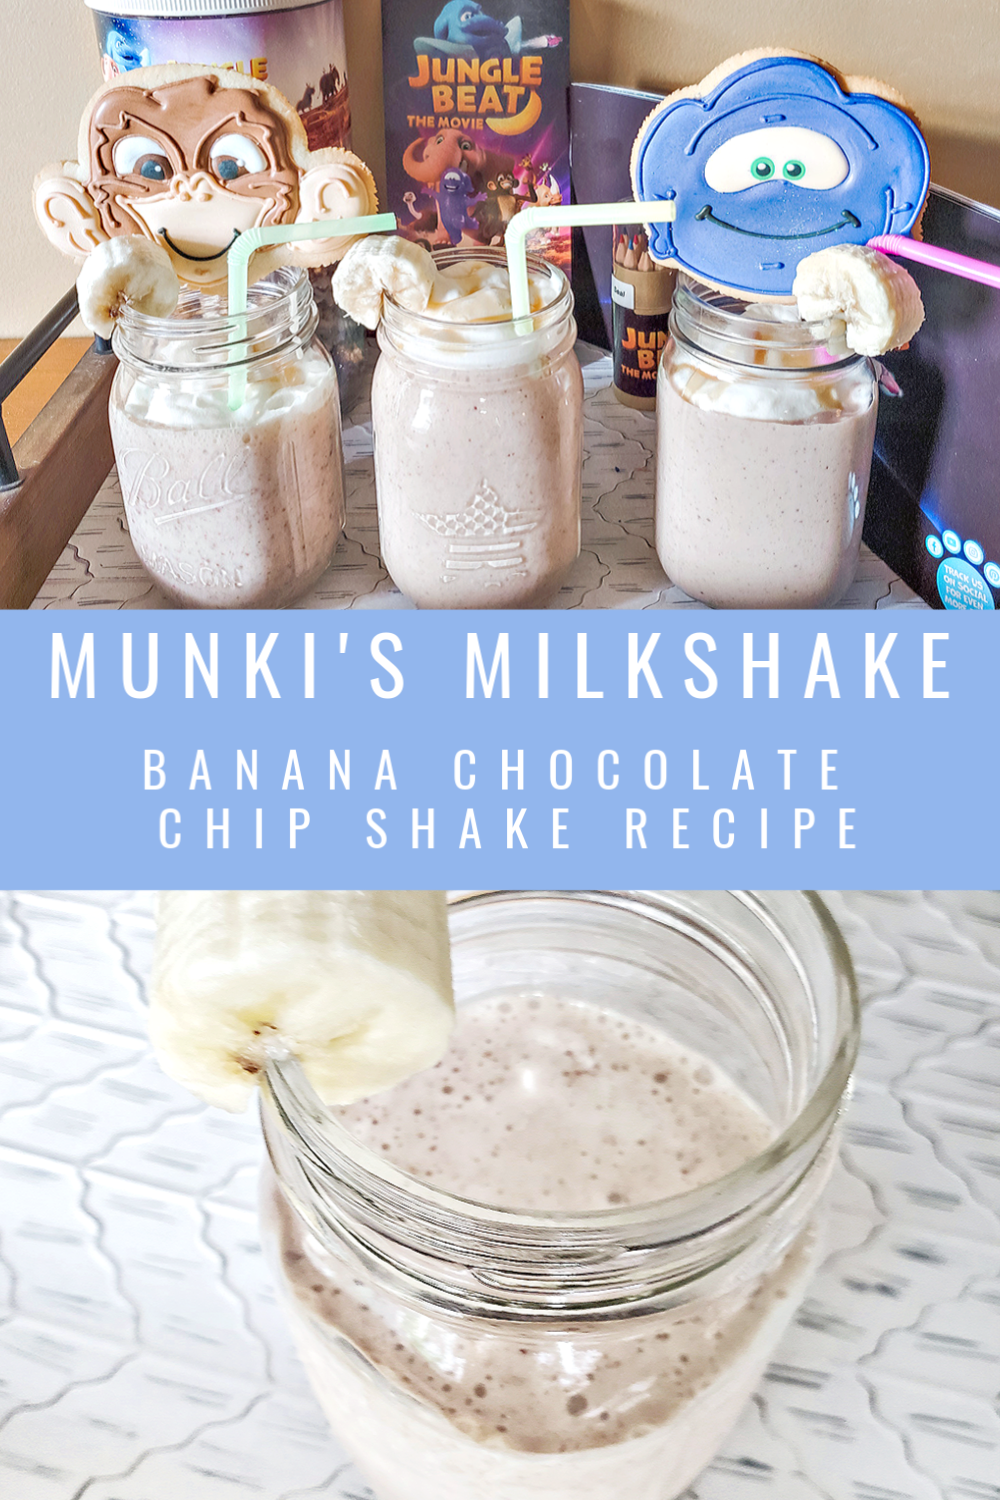 munki's milkshake banana